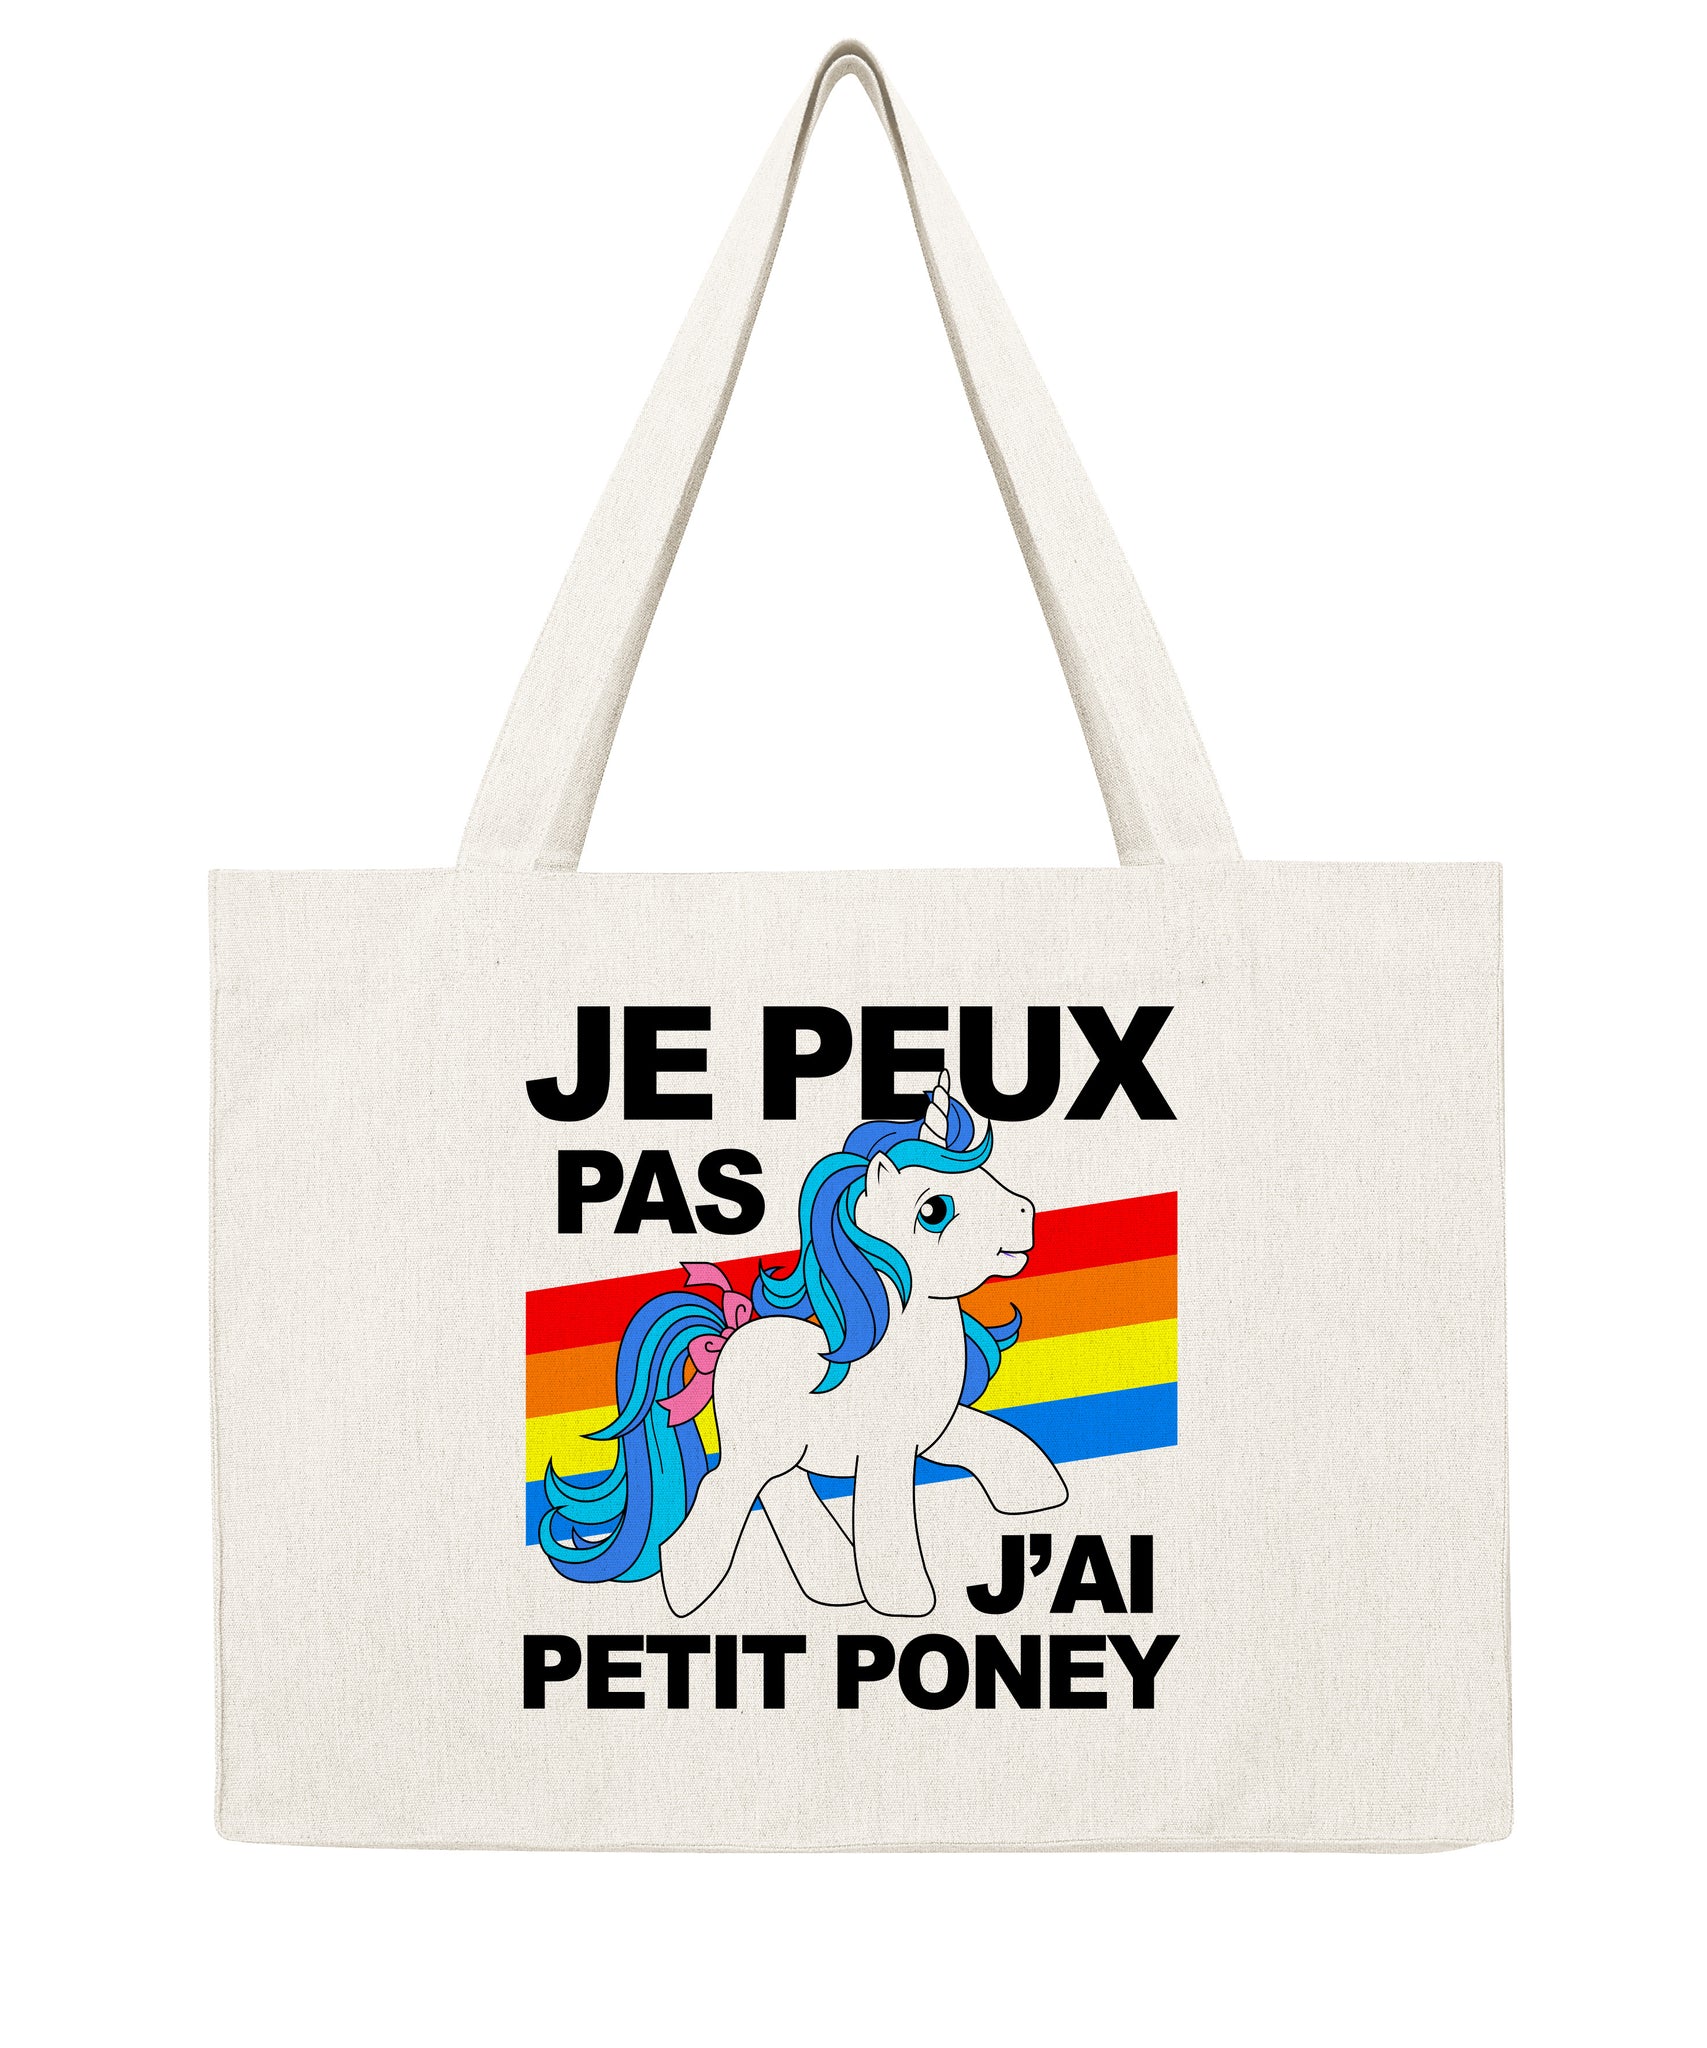 Je peux pas j'ai petit poney - Shopping bag-Sacs-Atelier Amelot